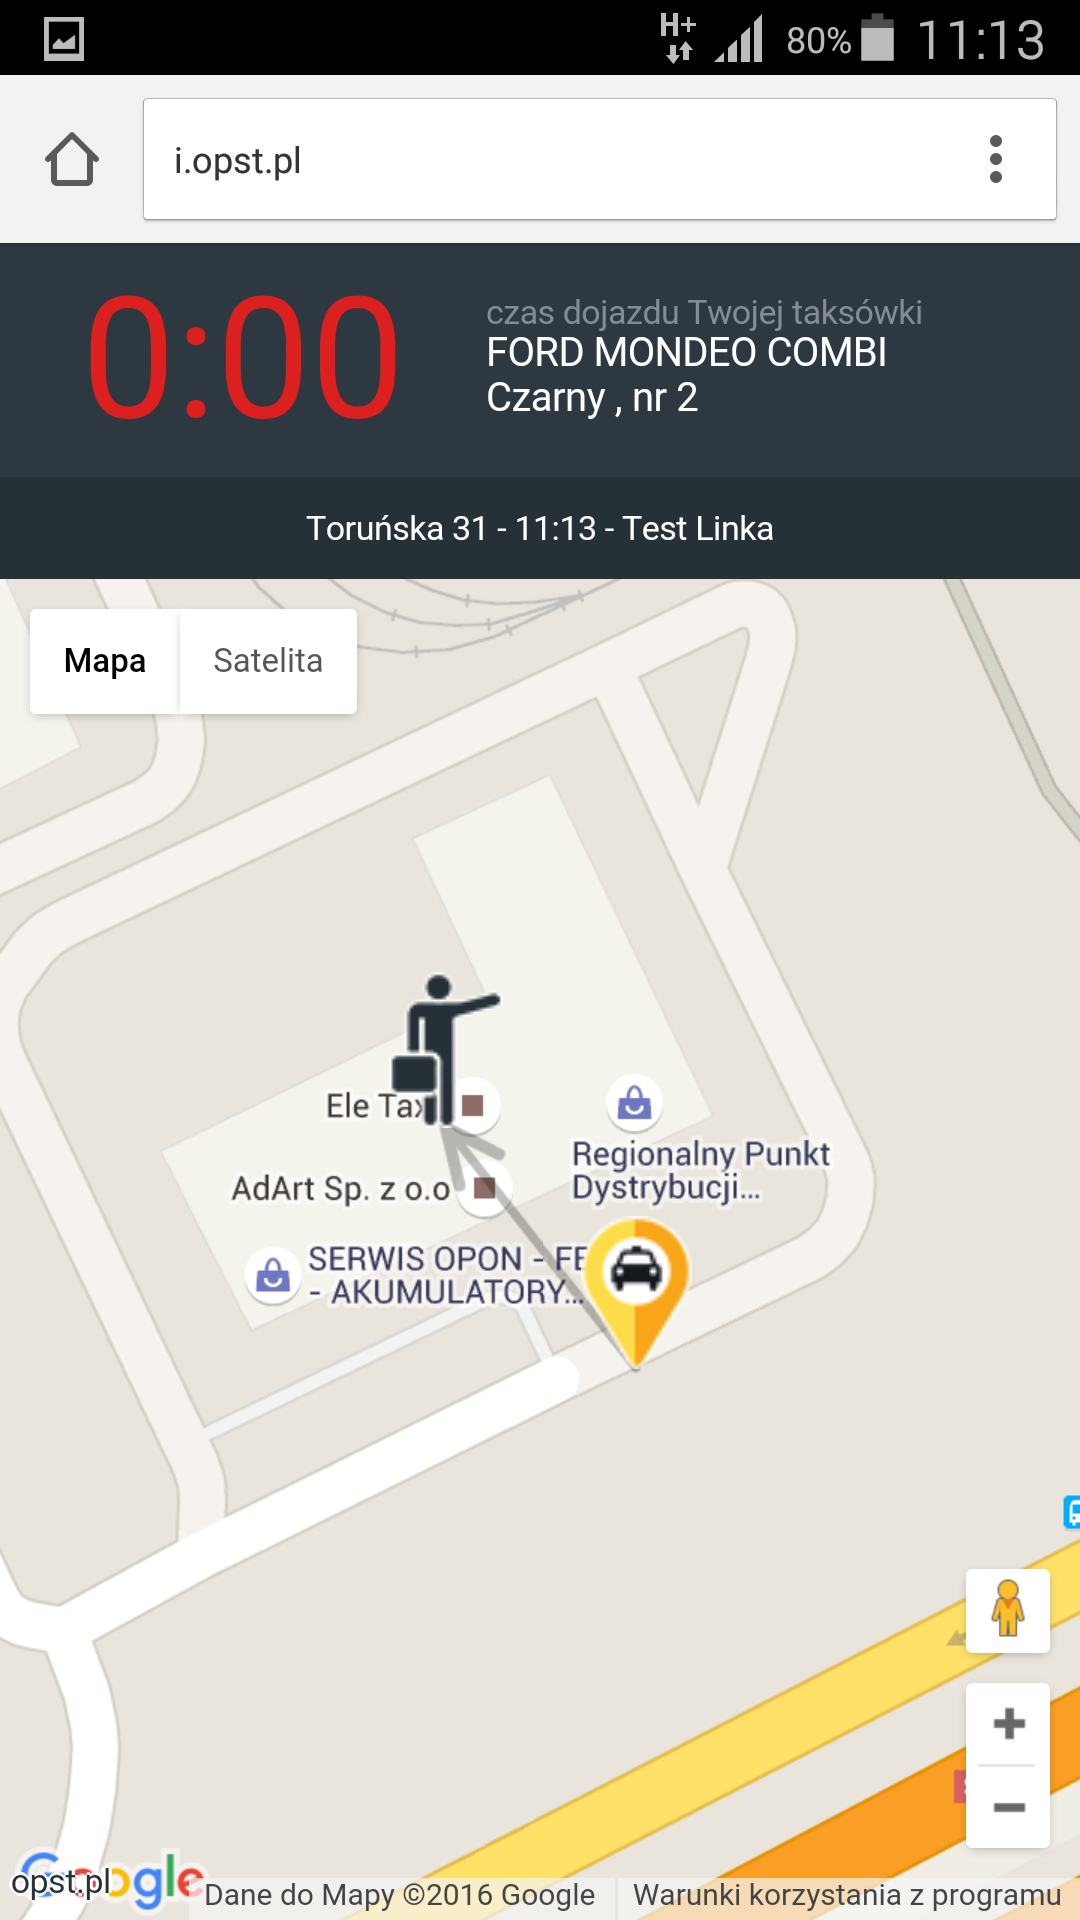 Ele Taxi - screen - droga taksówki do miejsca pasażera